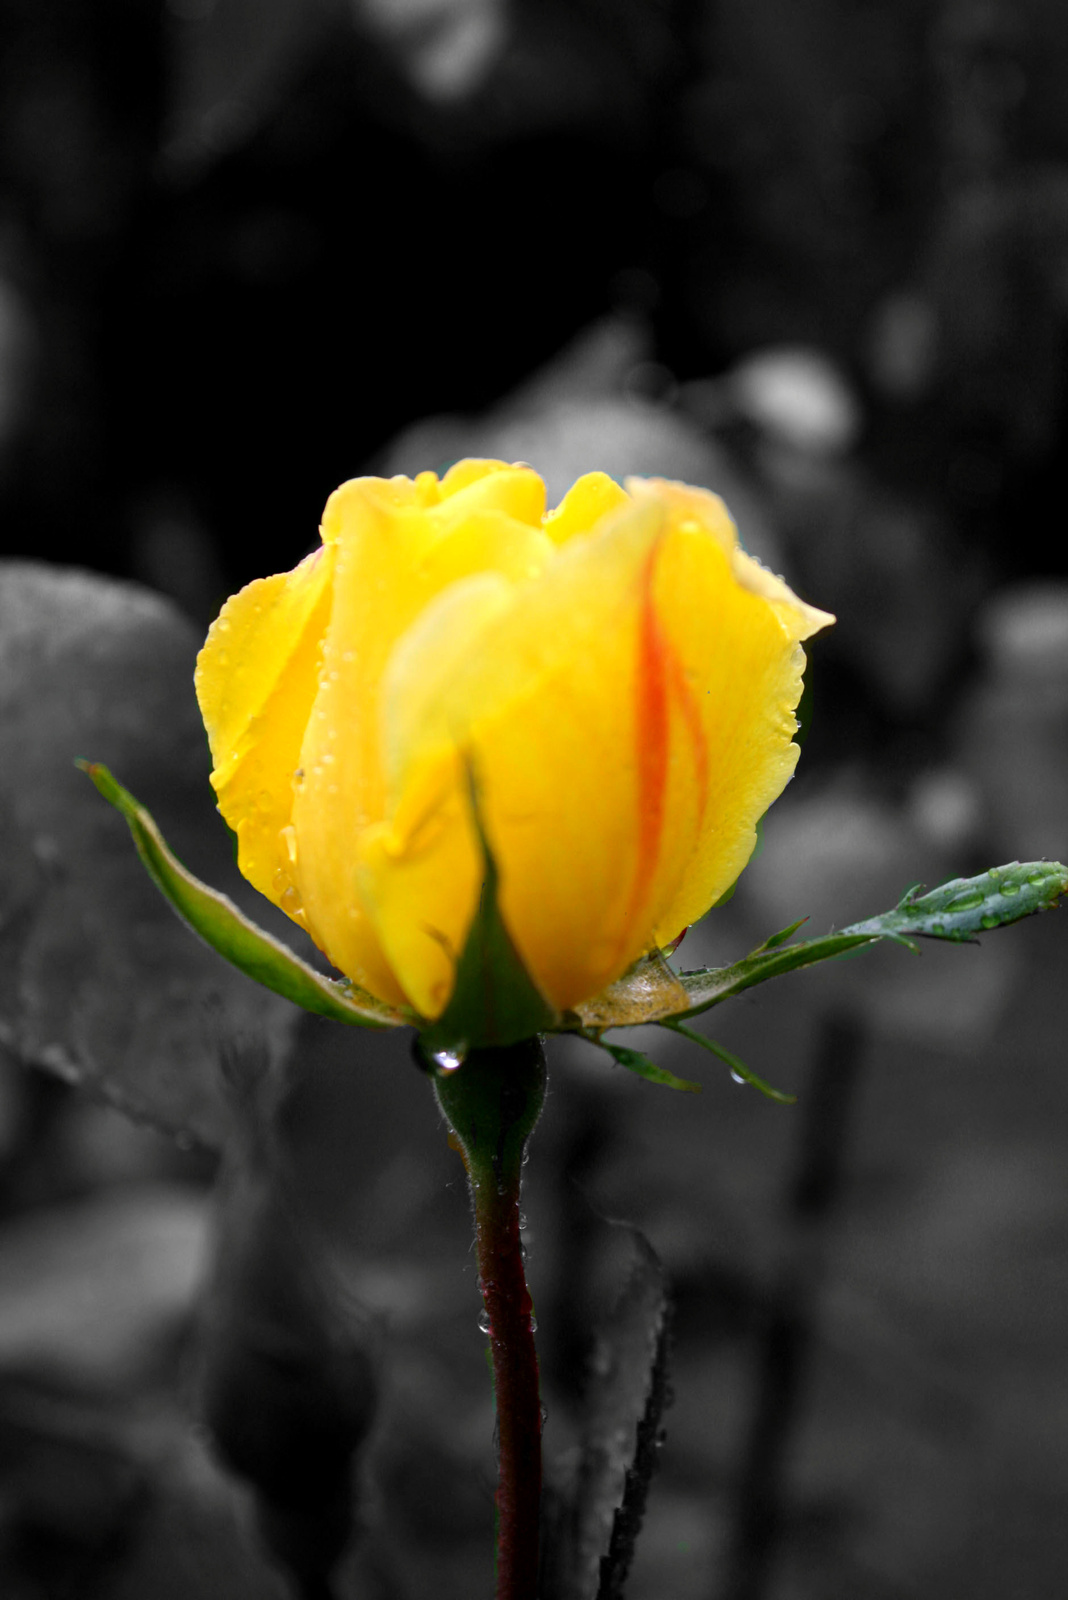 Nyílik még a sárga rózsa...